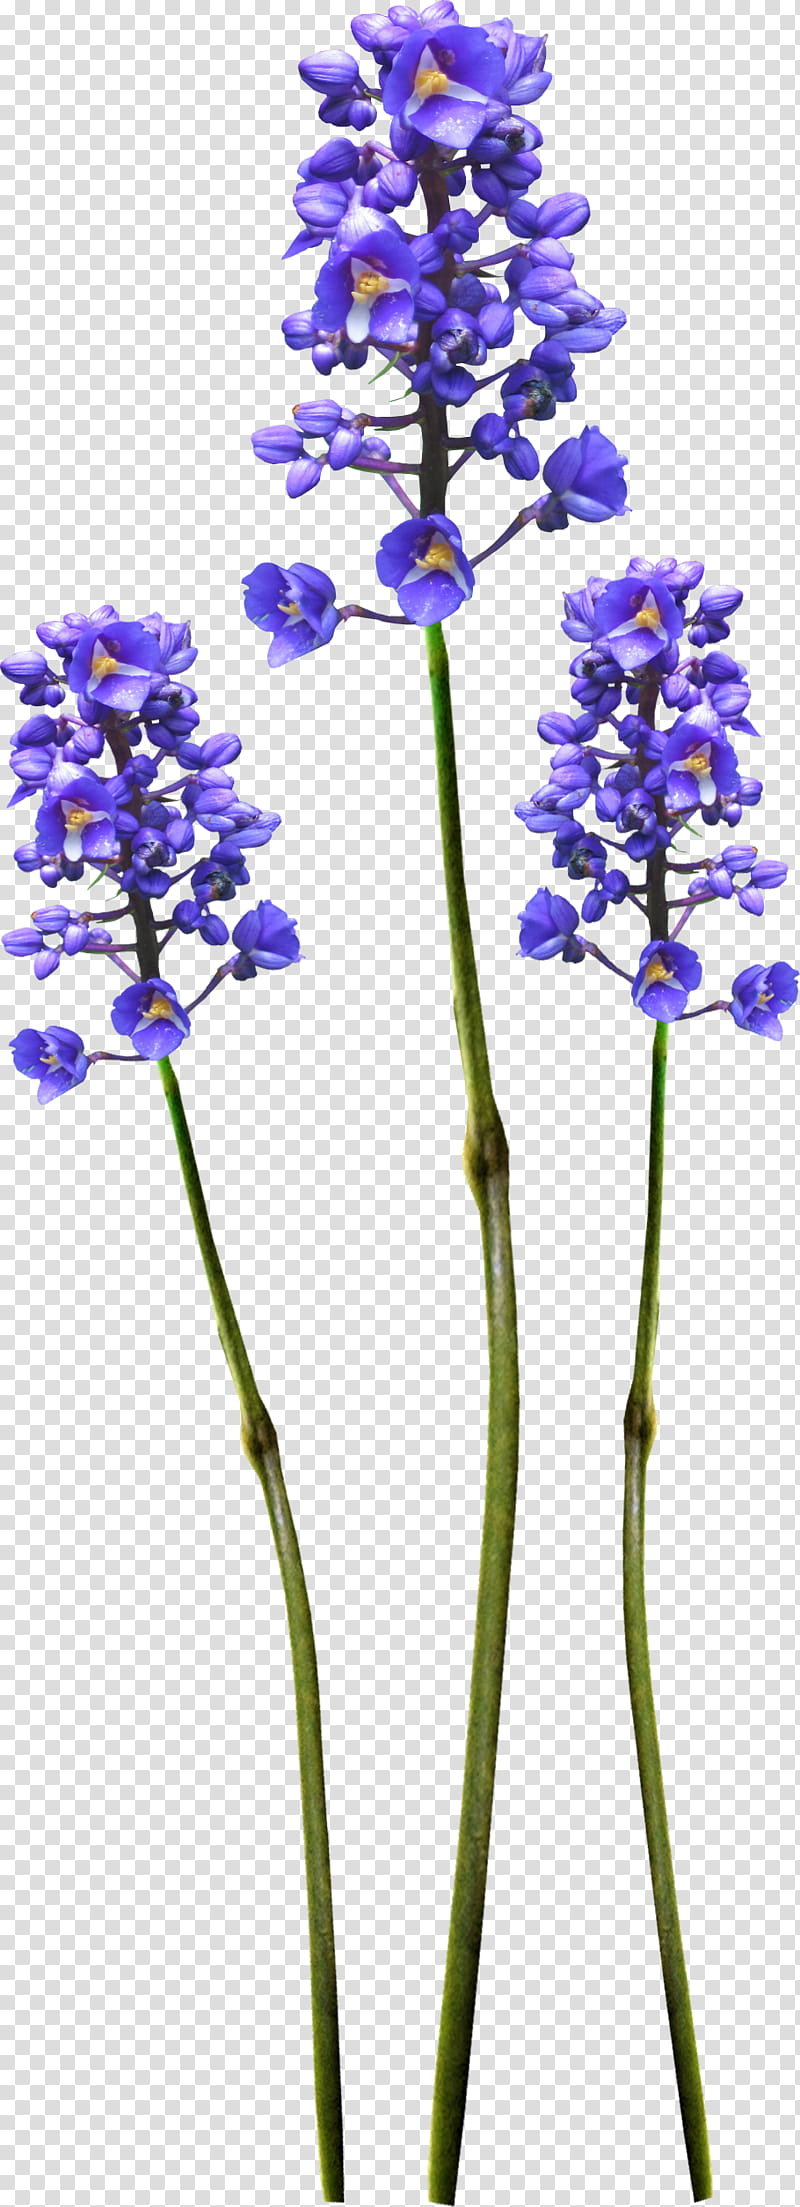 Purple Watercolor Flower, Watercolor Painting, Composition, Flower Bouquet, Wildflower, Saffron, Plant, Flora transparent background PNG clipart